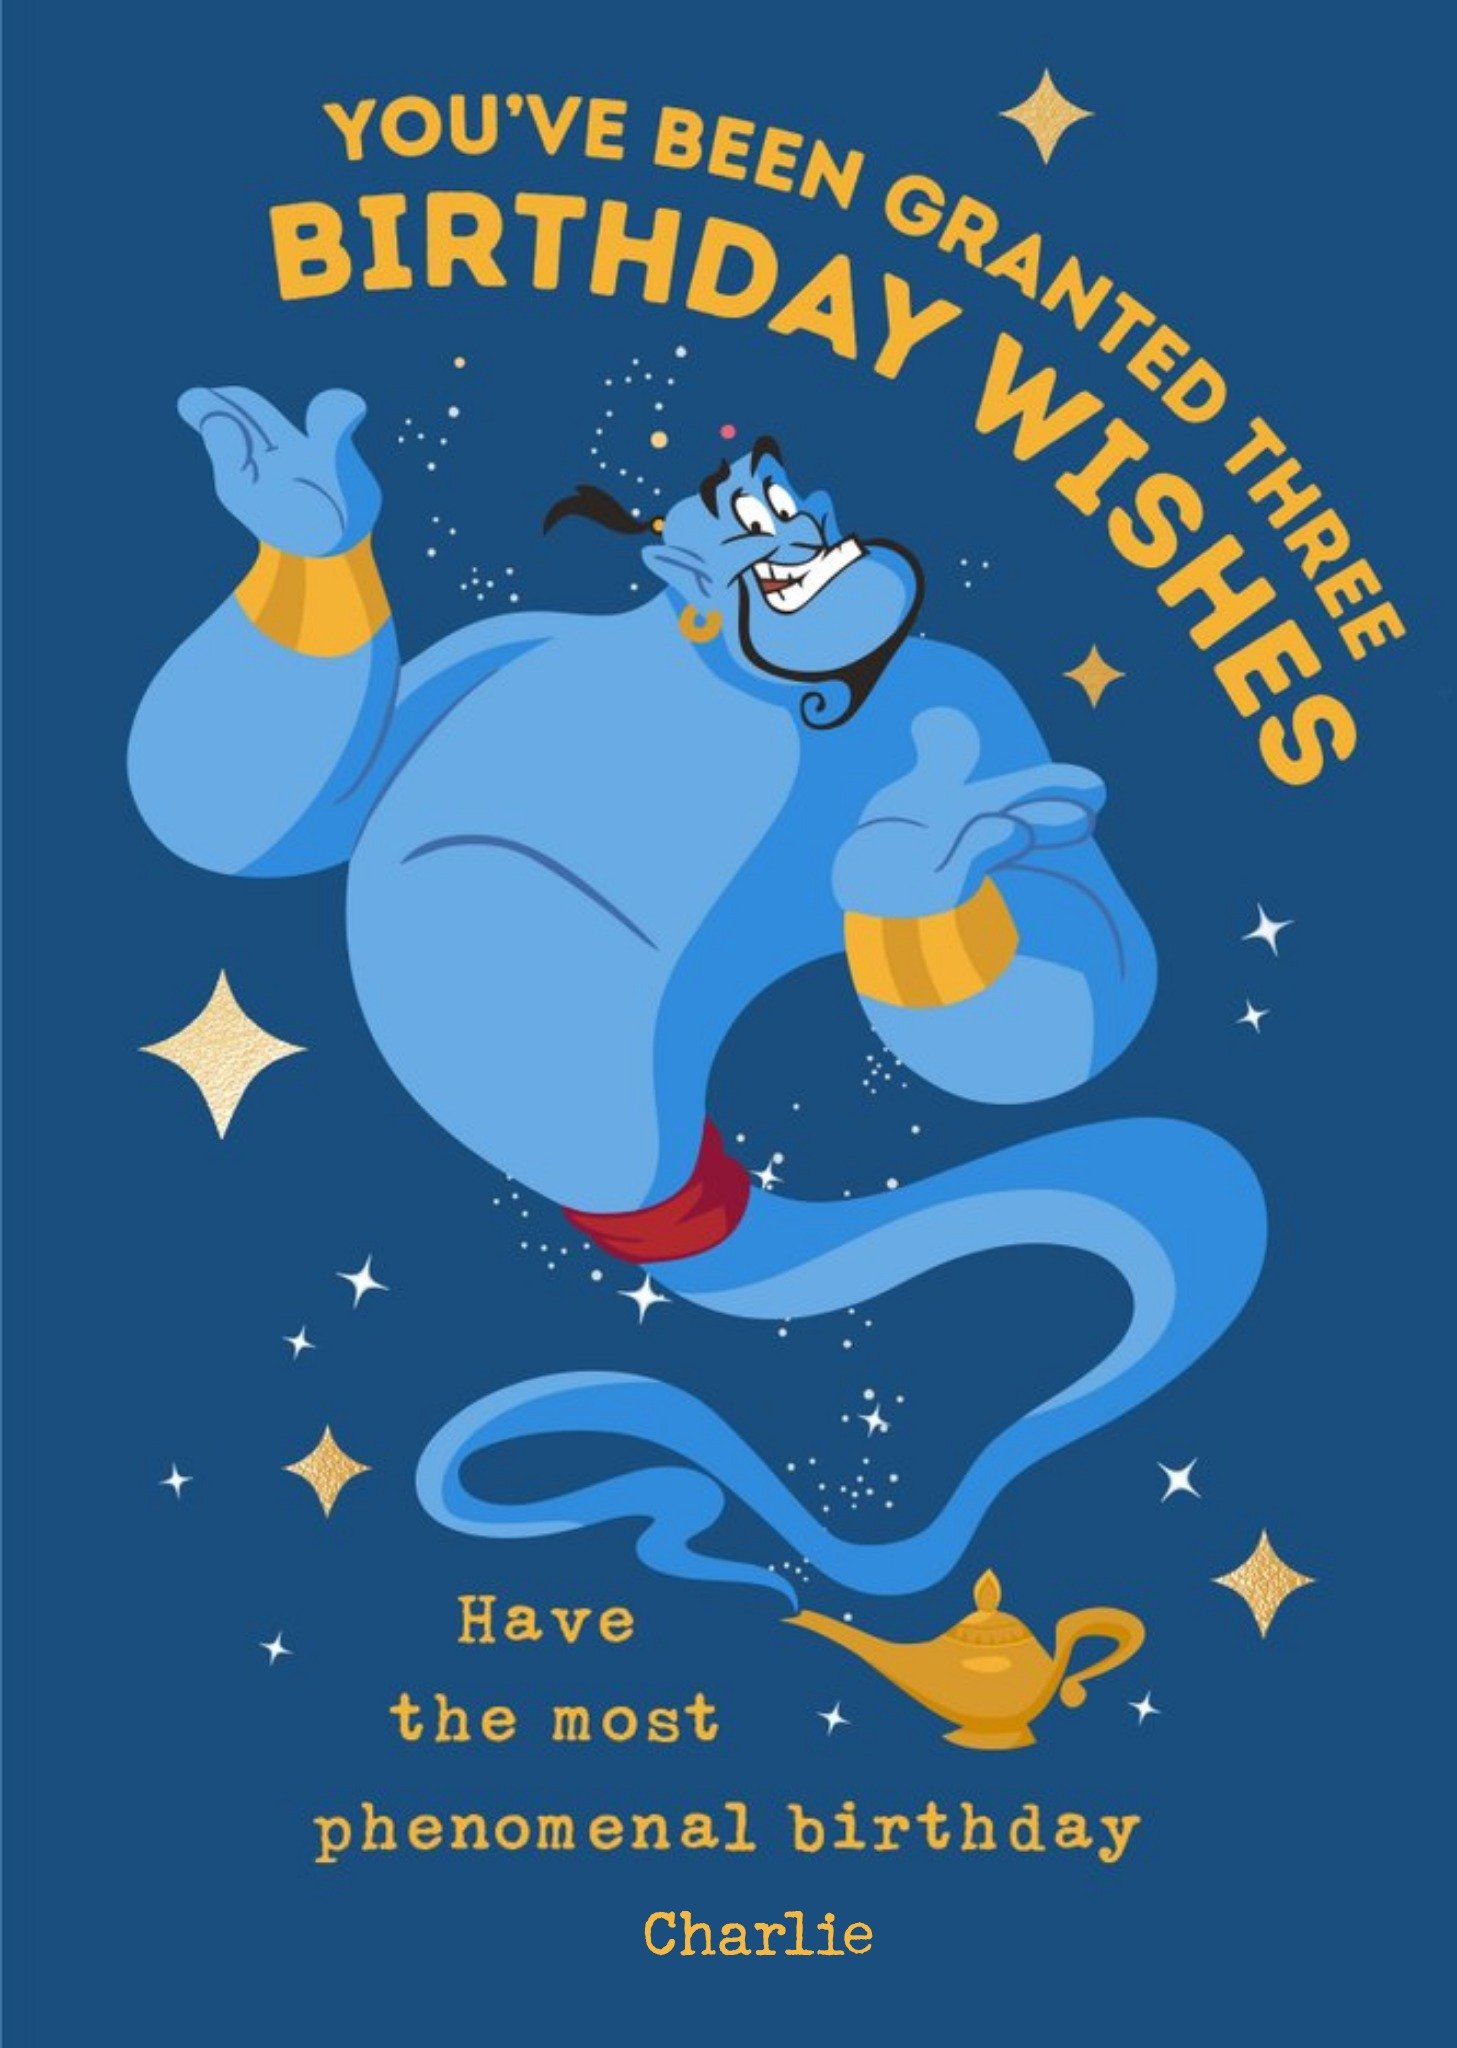 Disney Aladdin Birthday Card - Genie - Granted Three Birthday Wishes Birthday Card Ecard